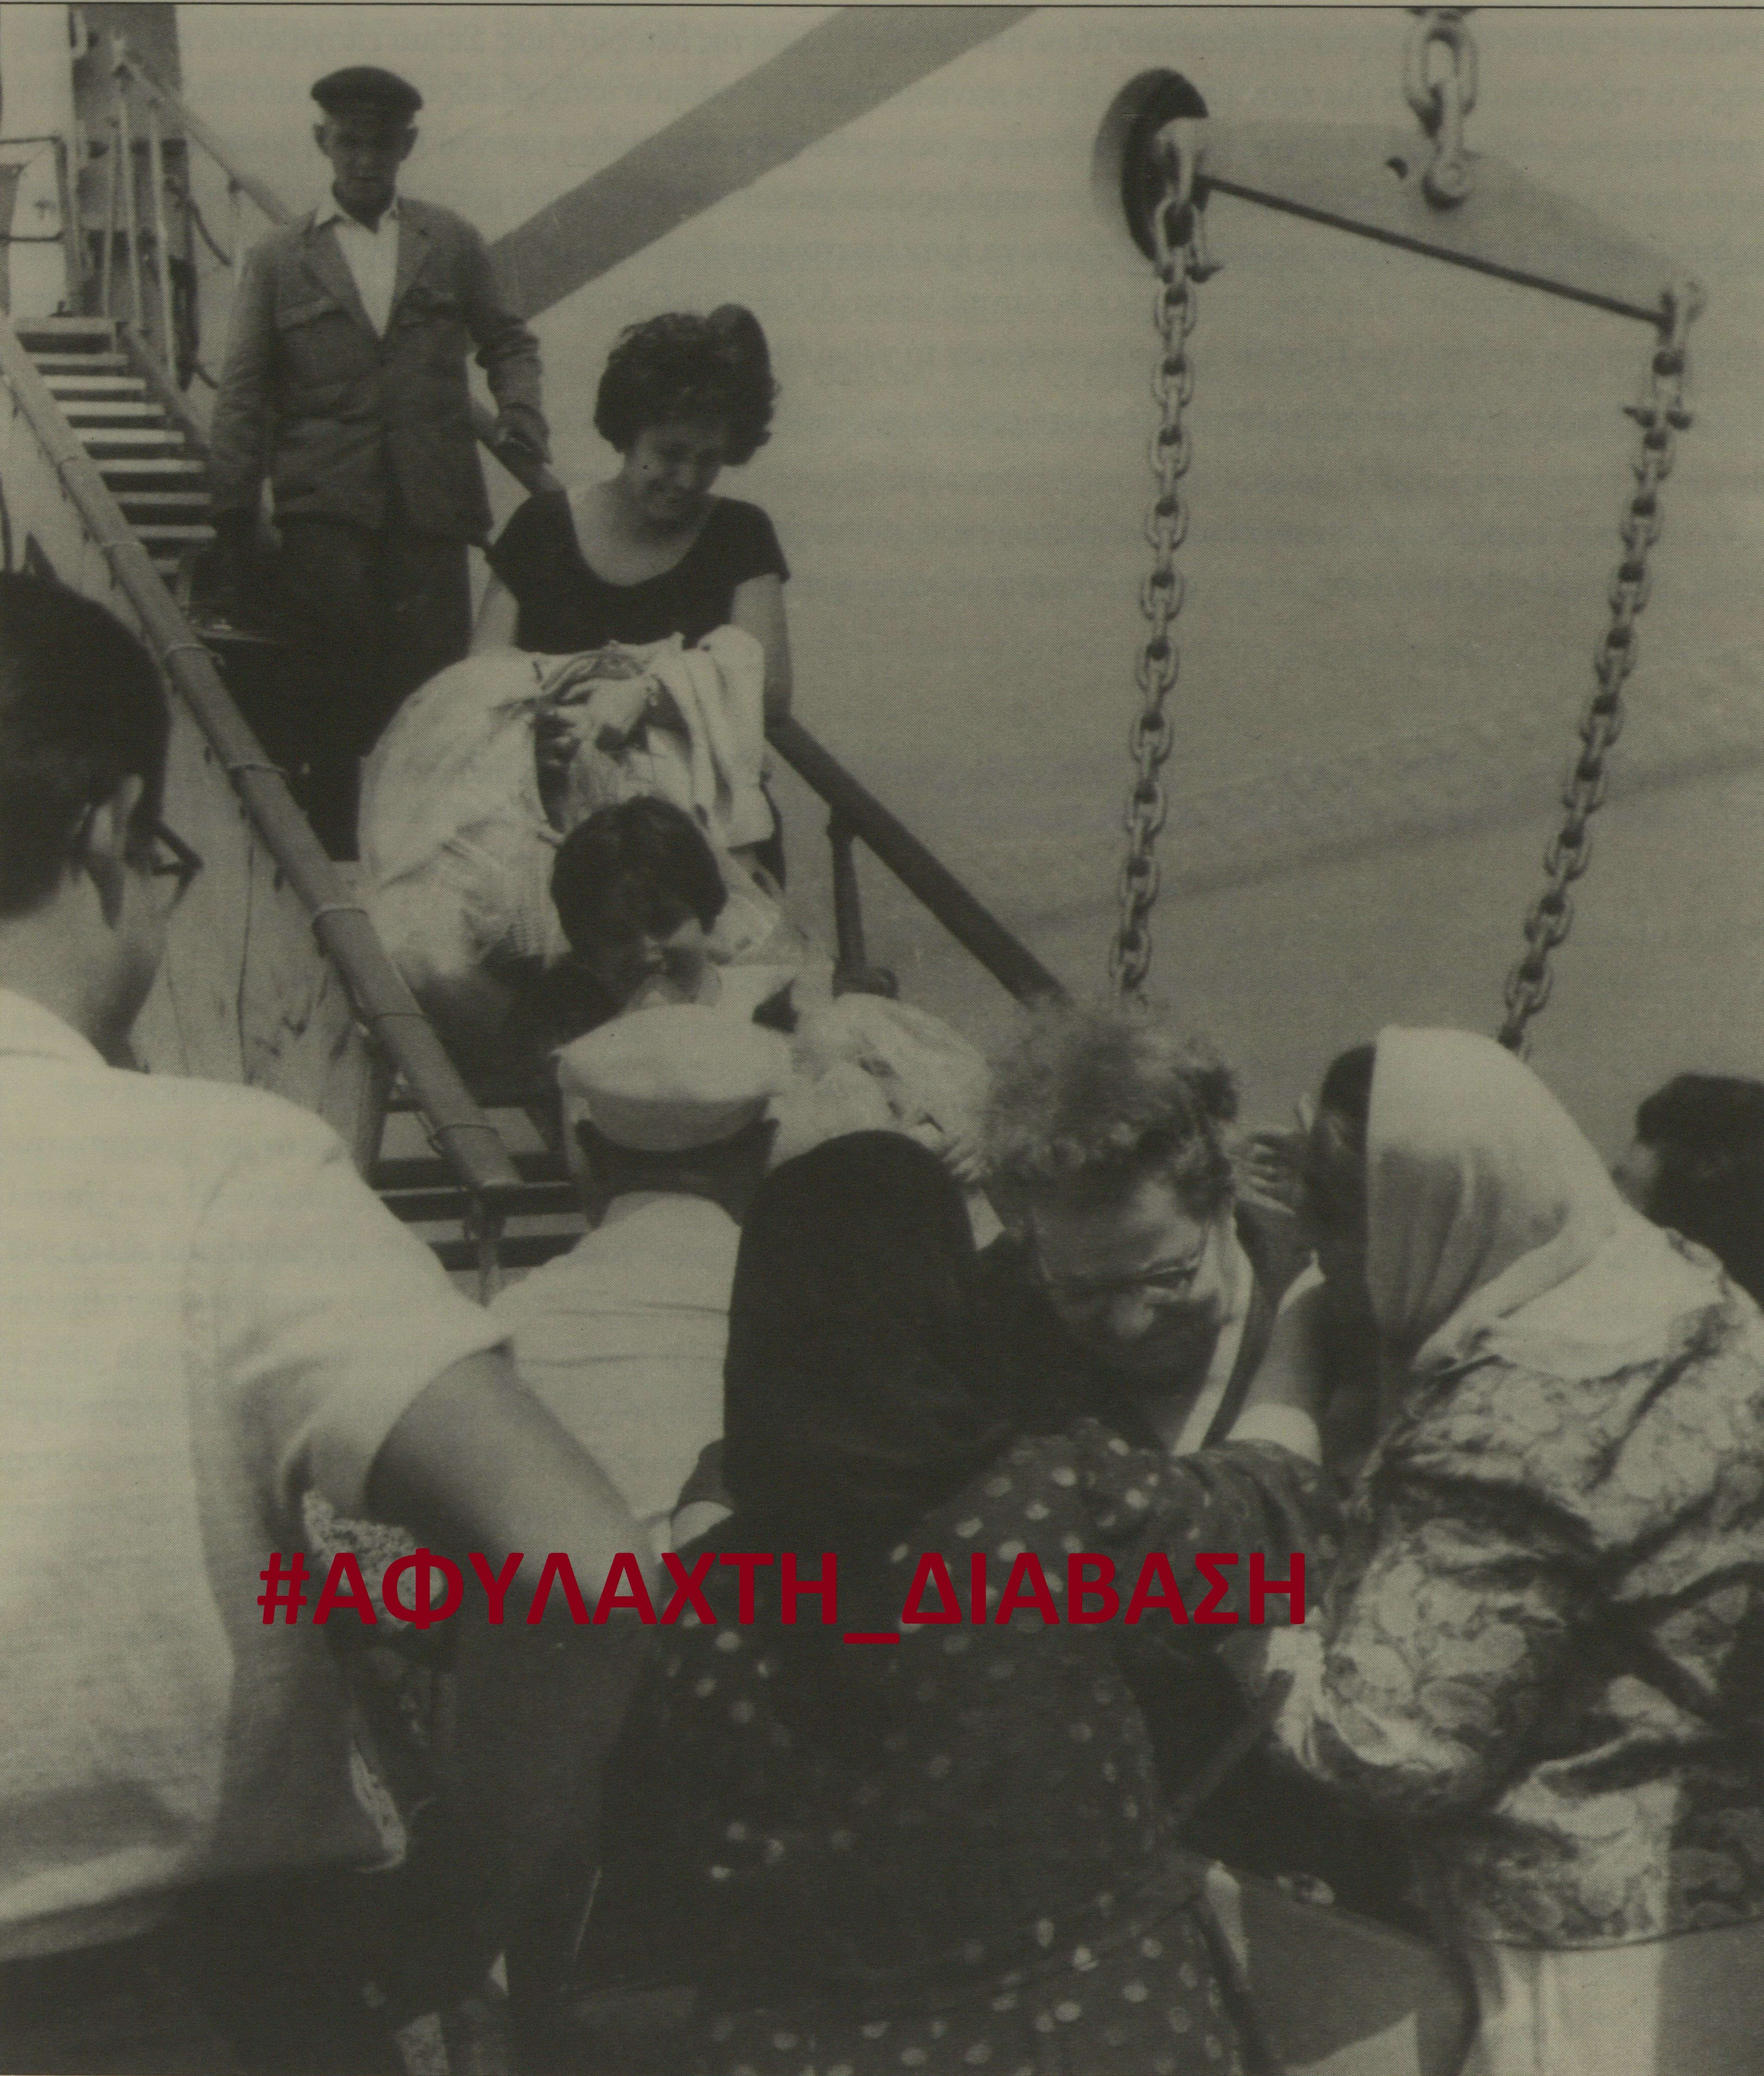 Οι απελάσεις των Ρωμιών της Πόλης το 1964, στην «Αφύλαχτη Διάβαση» του Πρώτου Προγράμματος